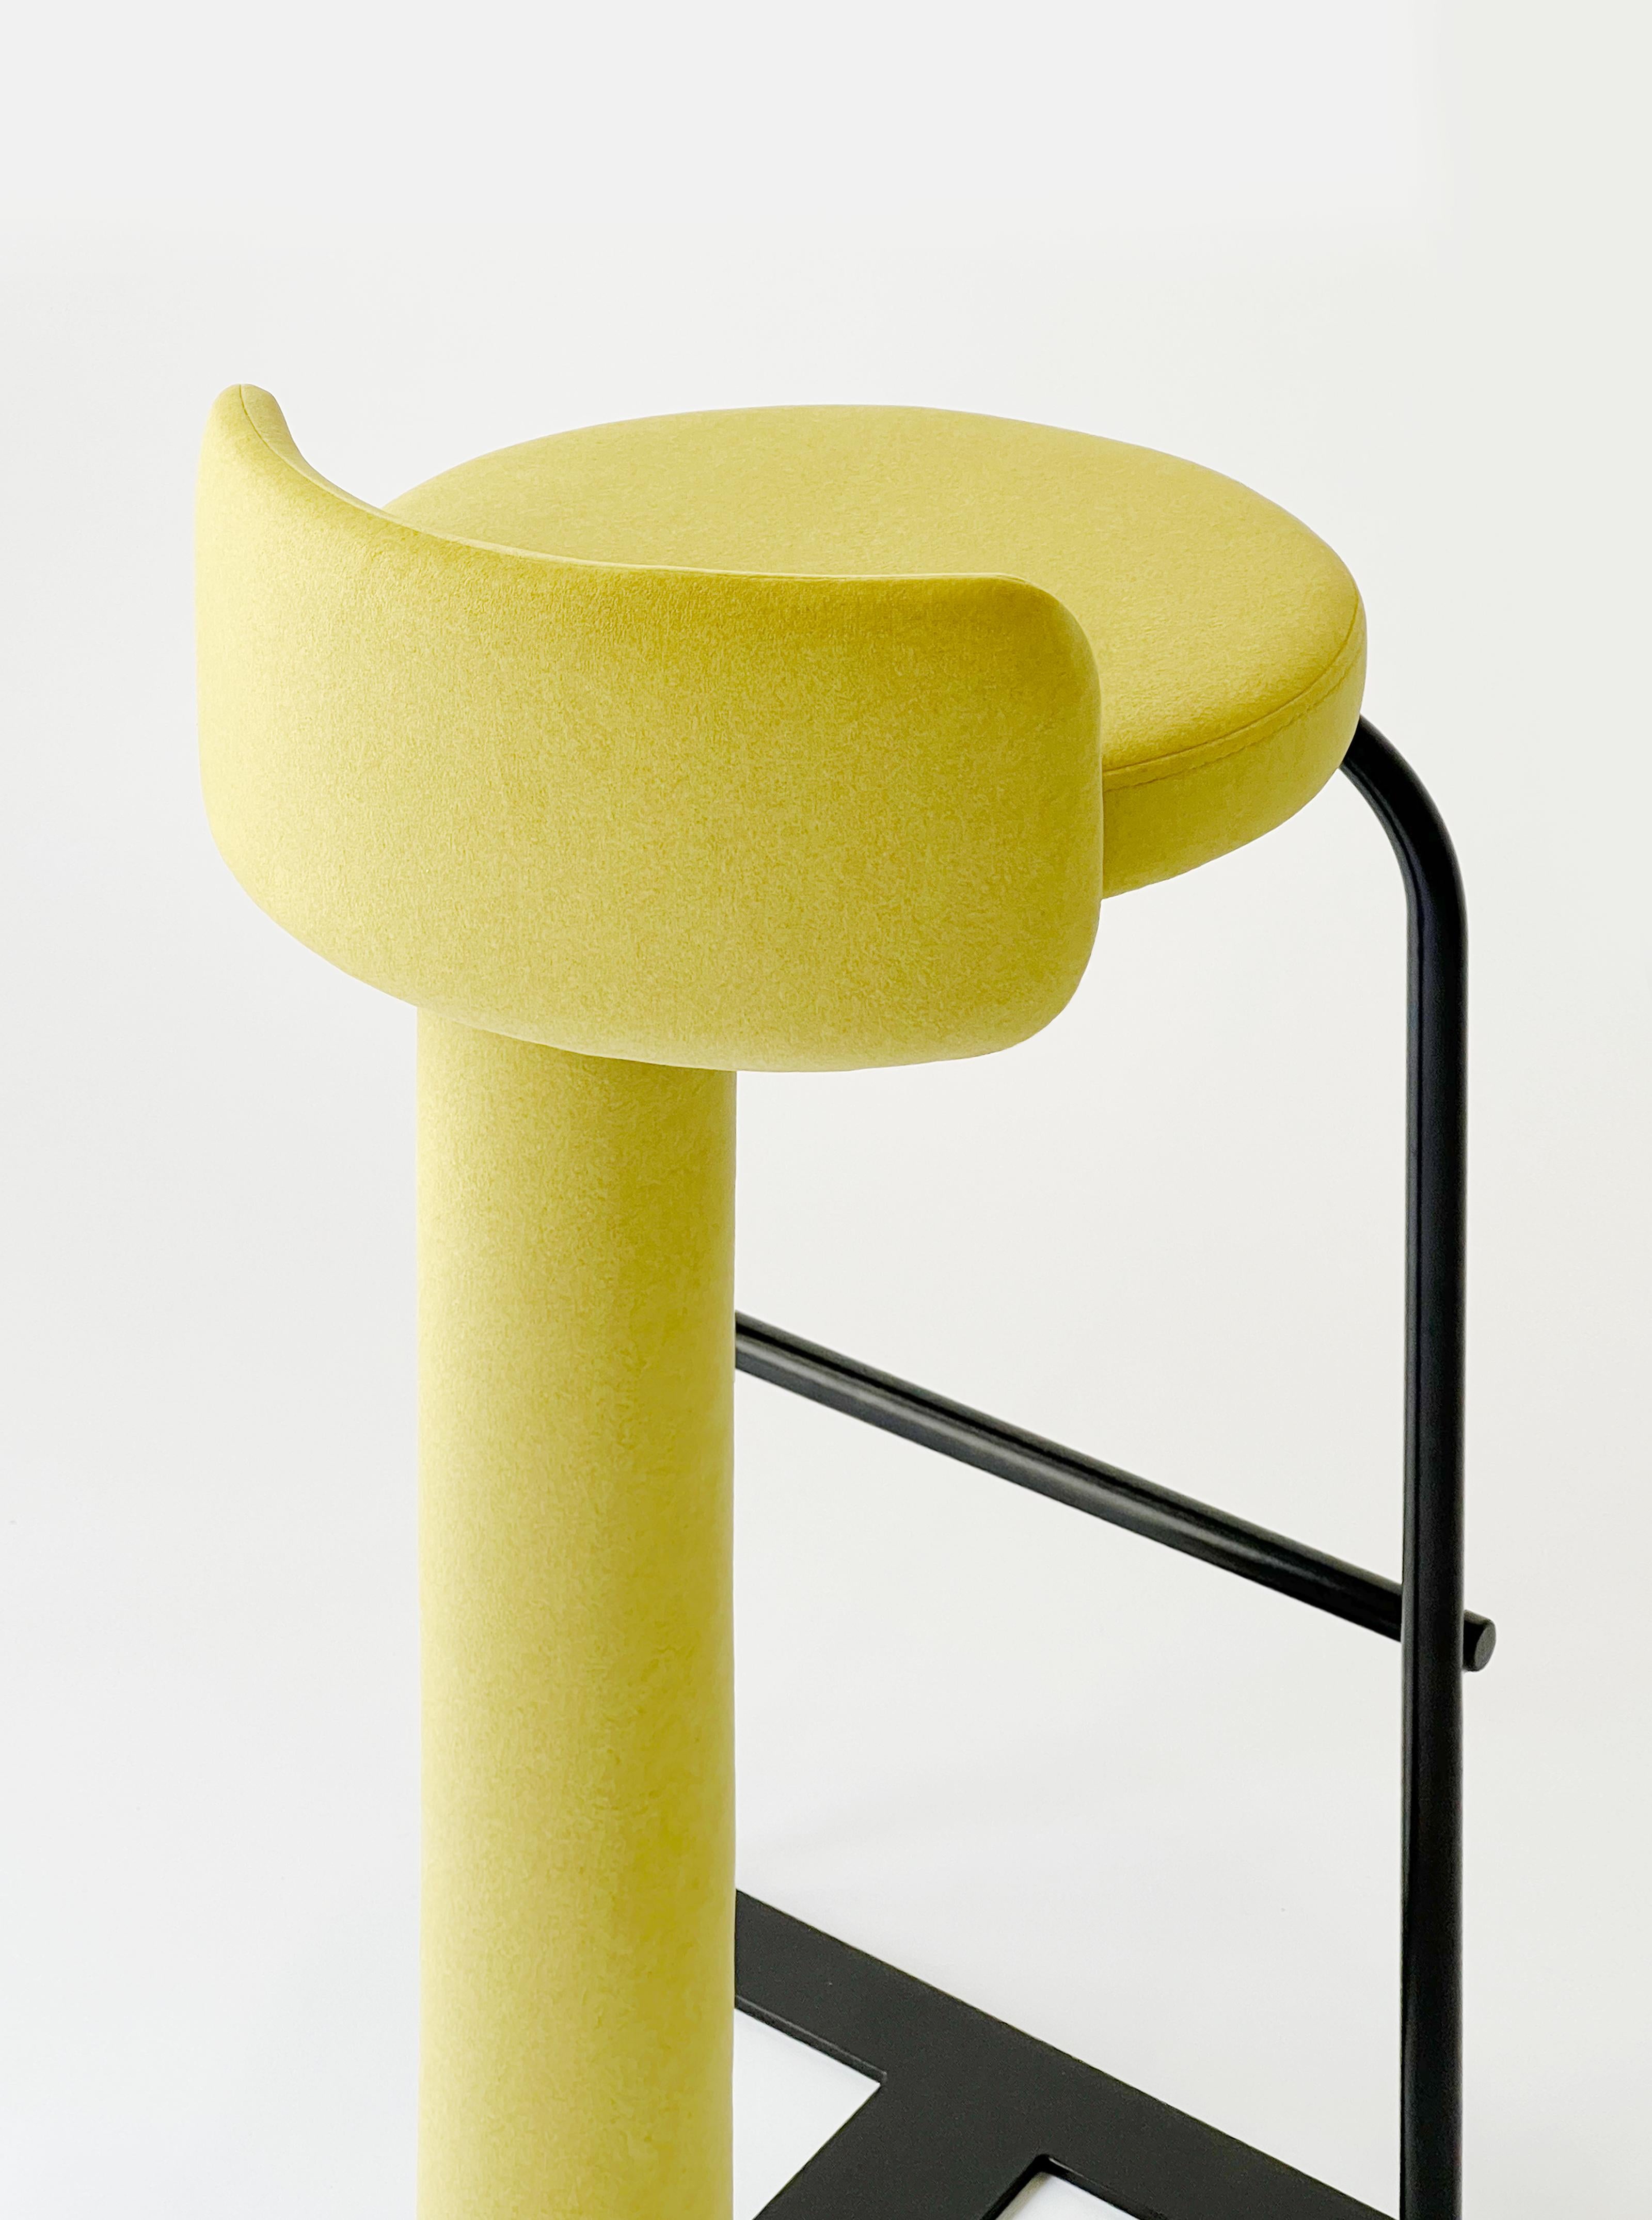 yellow bar stools